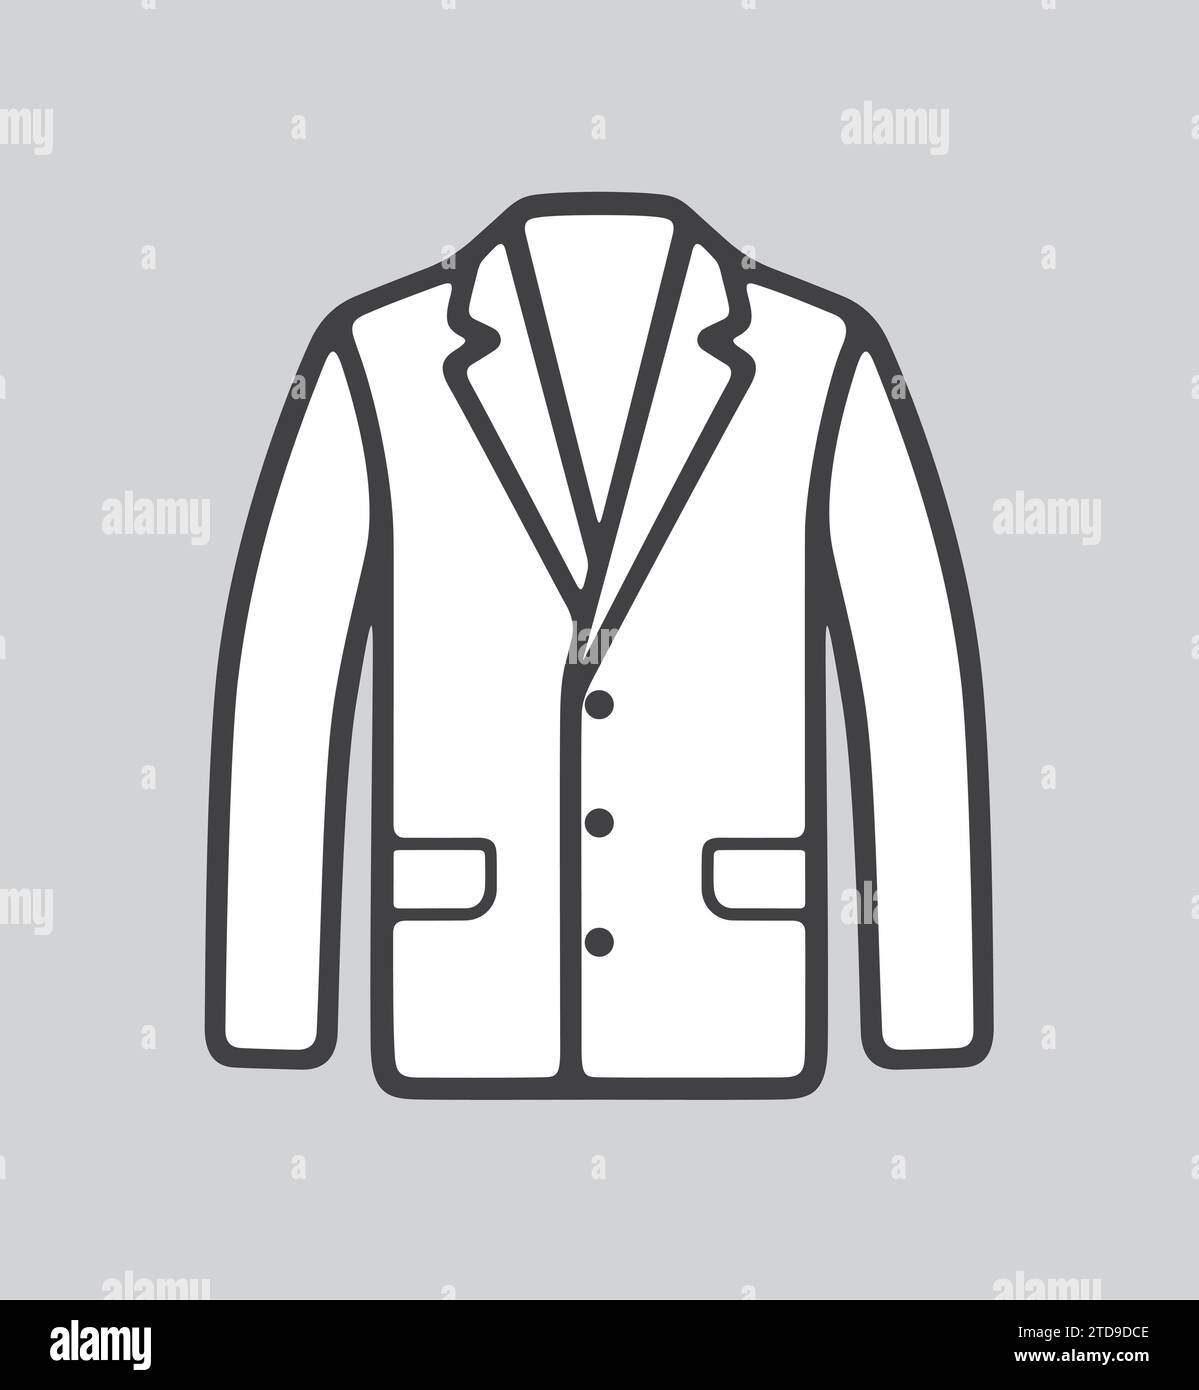 Herren Business Jacket Line Symbol auf einem Hintergrund. Vektorabbildung. Stock Vektor